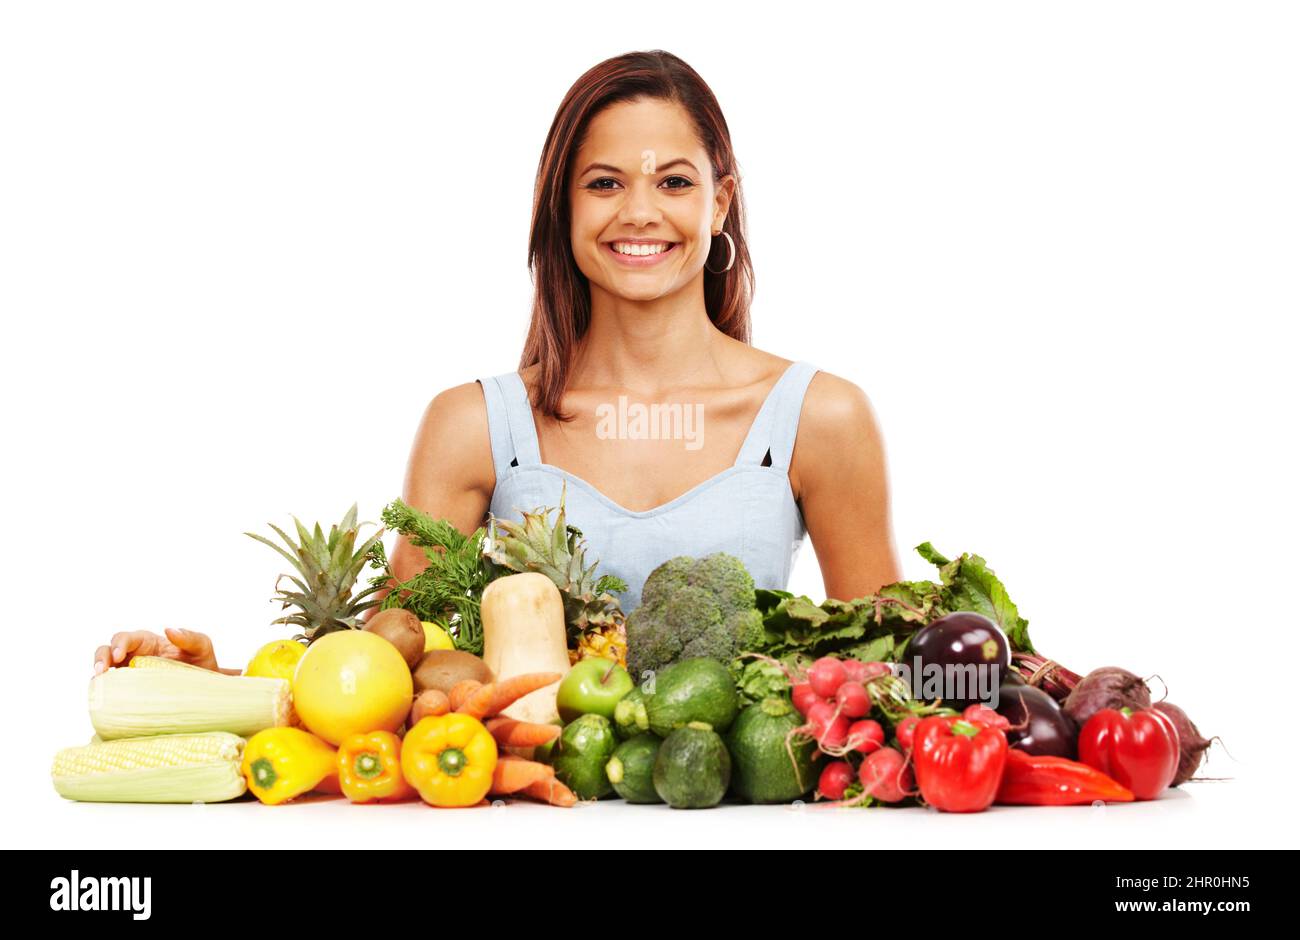 Sich über gesunde Entscheidungen sehr wohl fühlen. Lächelnde junge Frau neben einer Auswahl an gesundem und frischem Gemüse. Stockfoto